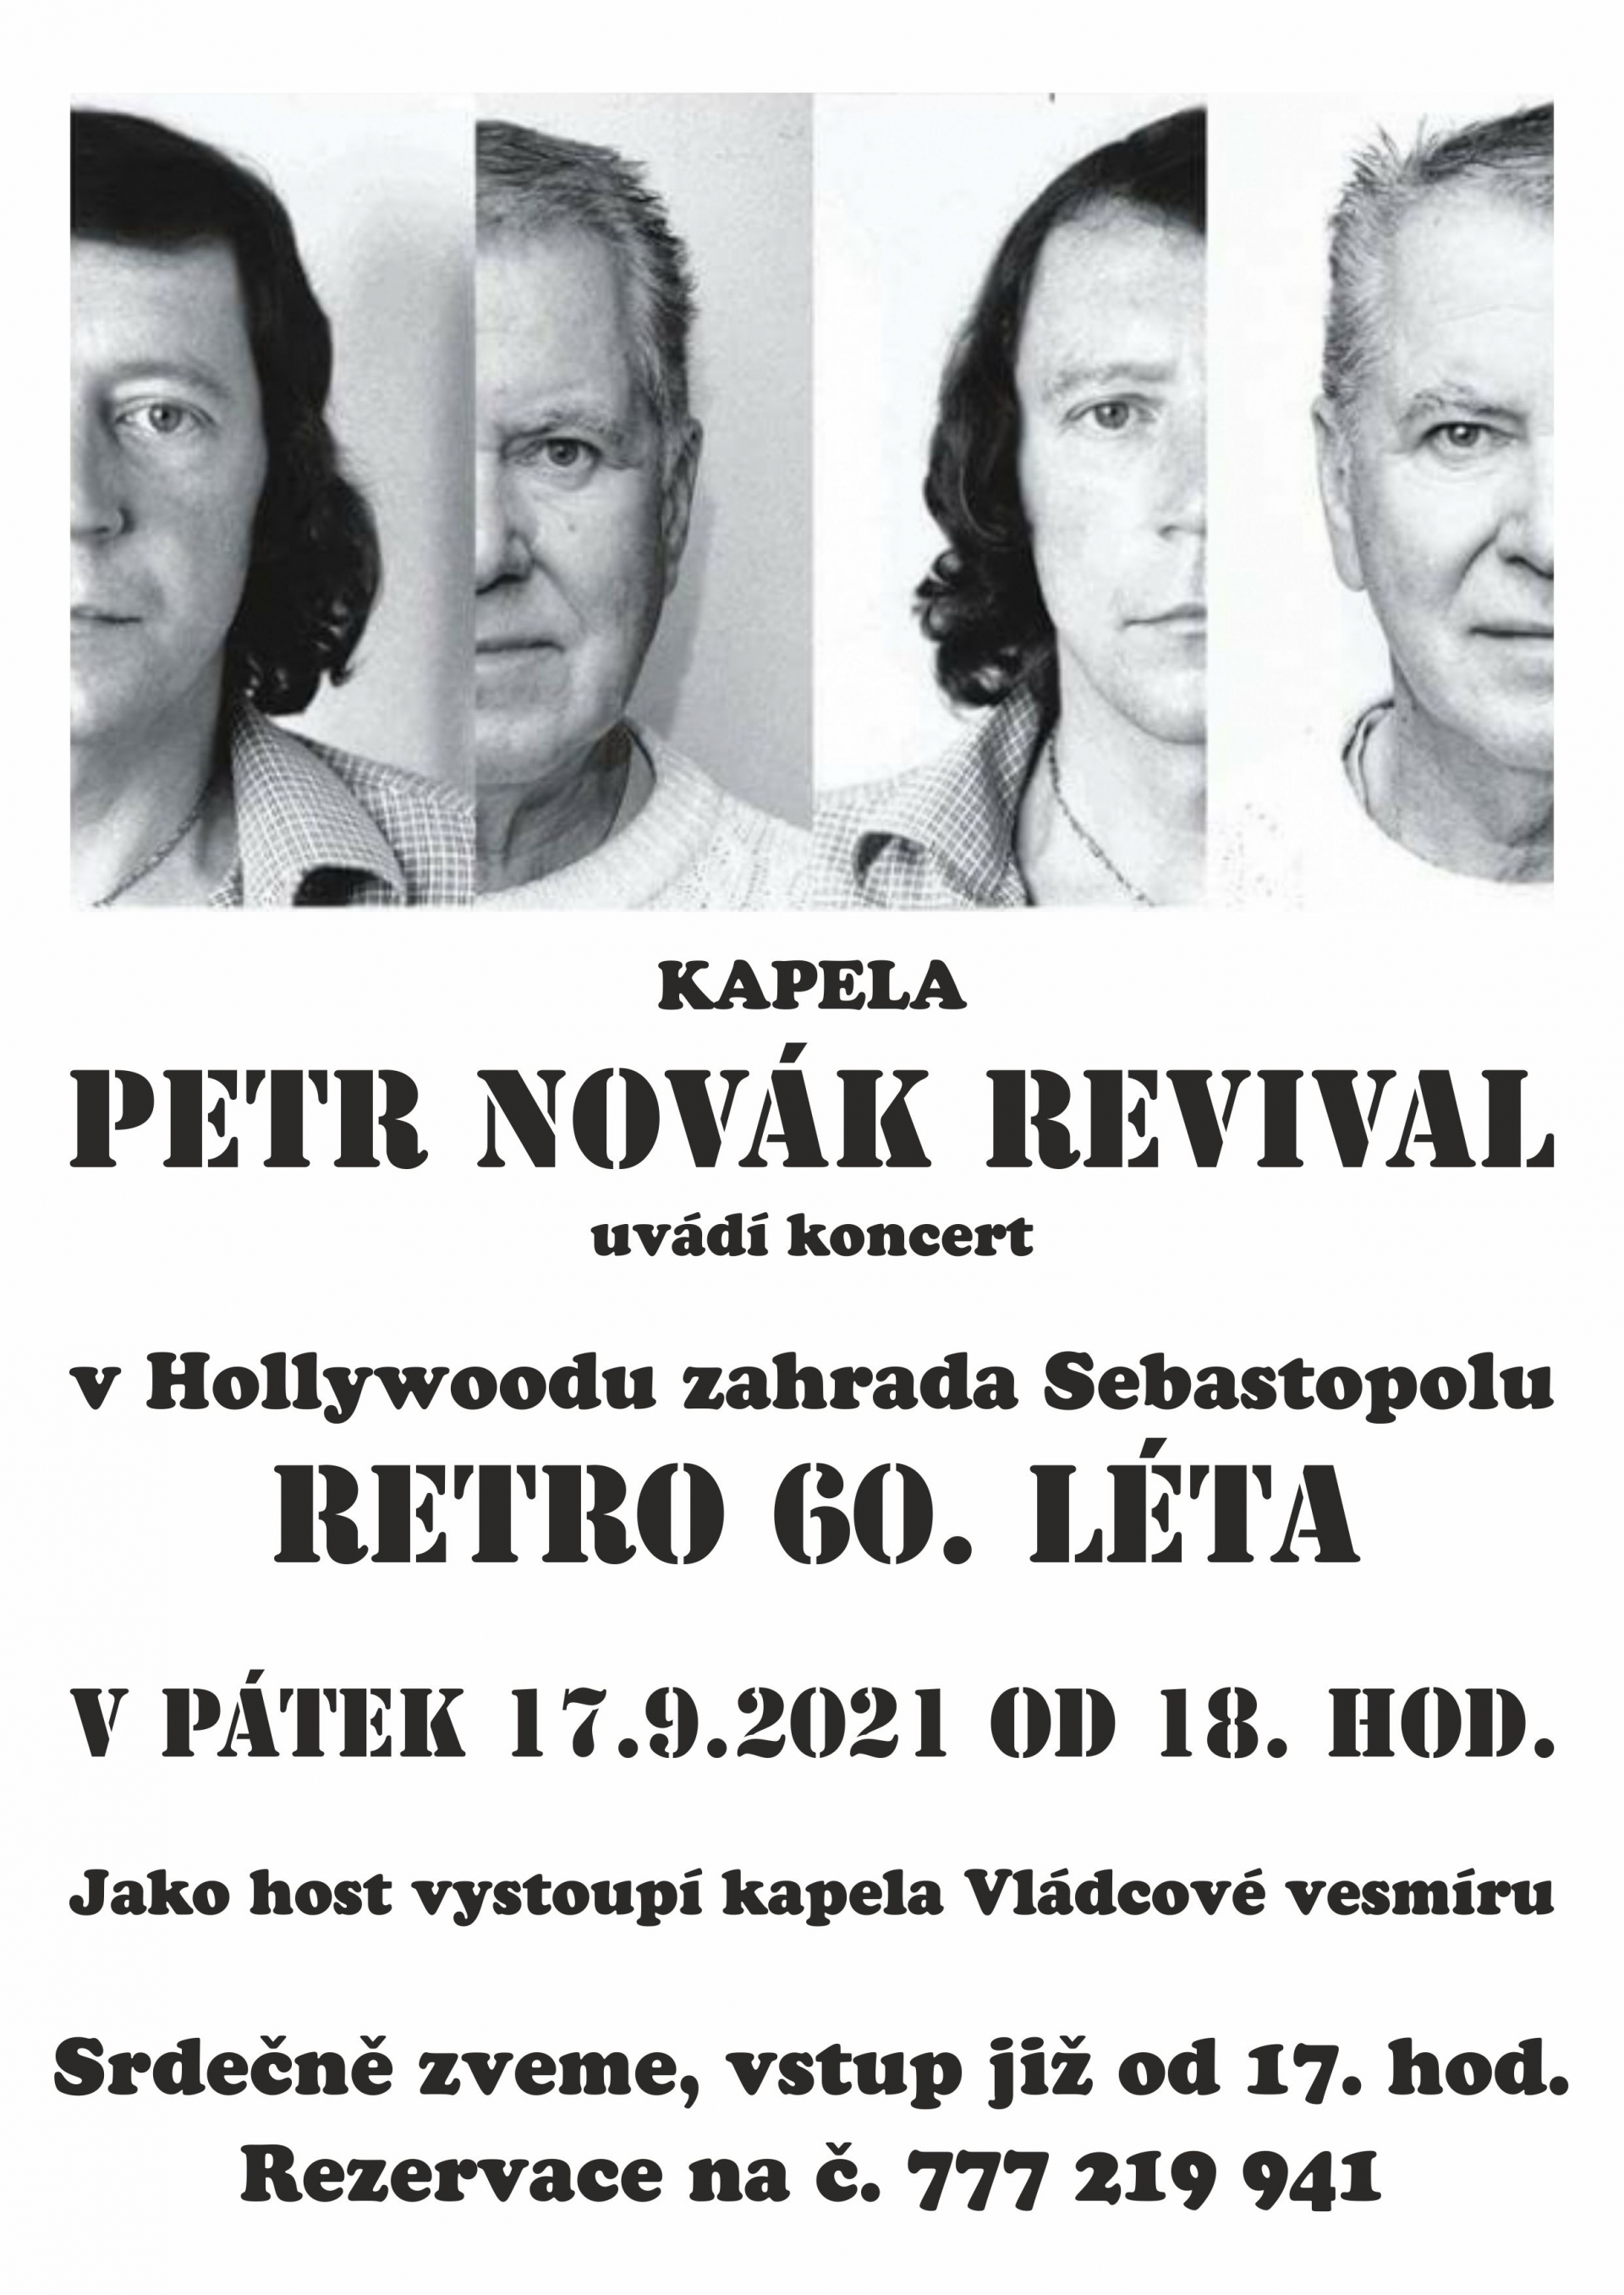 Petr Novák revival - koncert